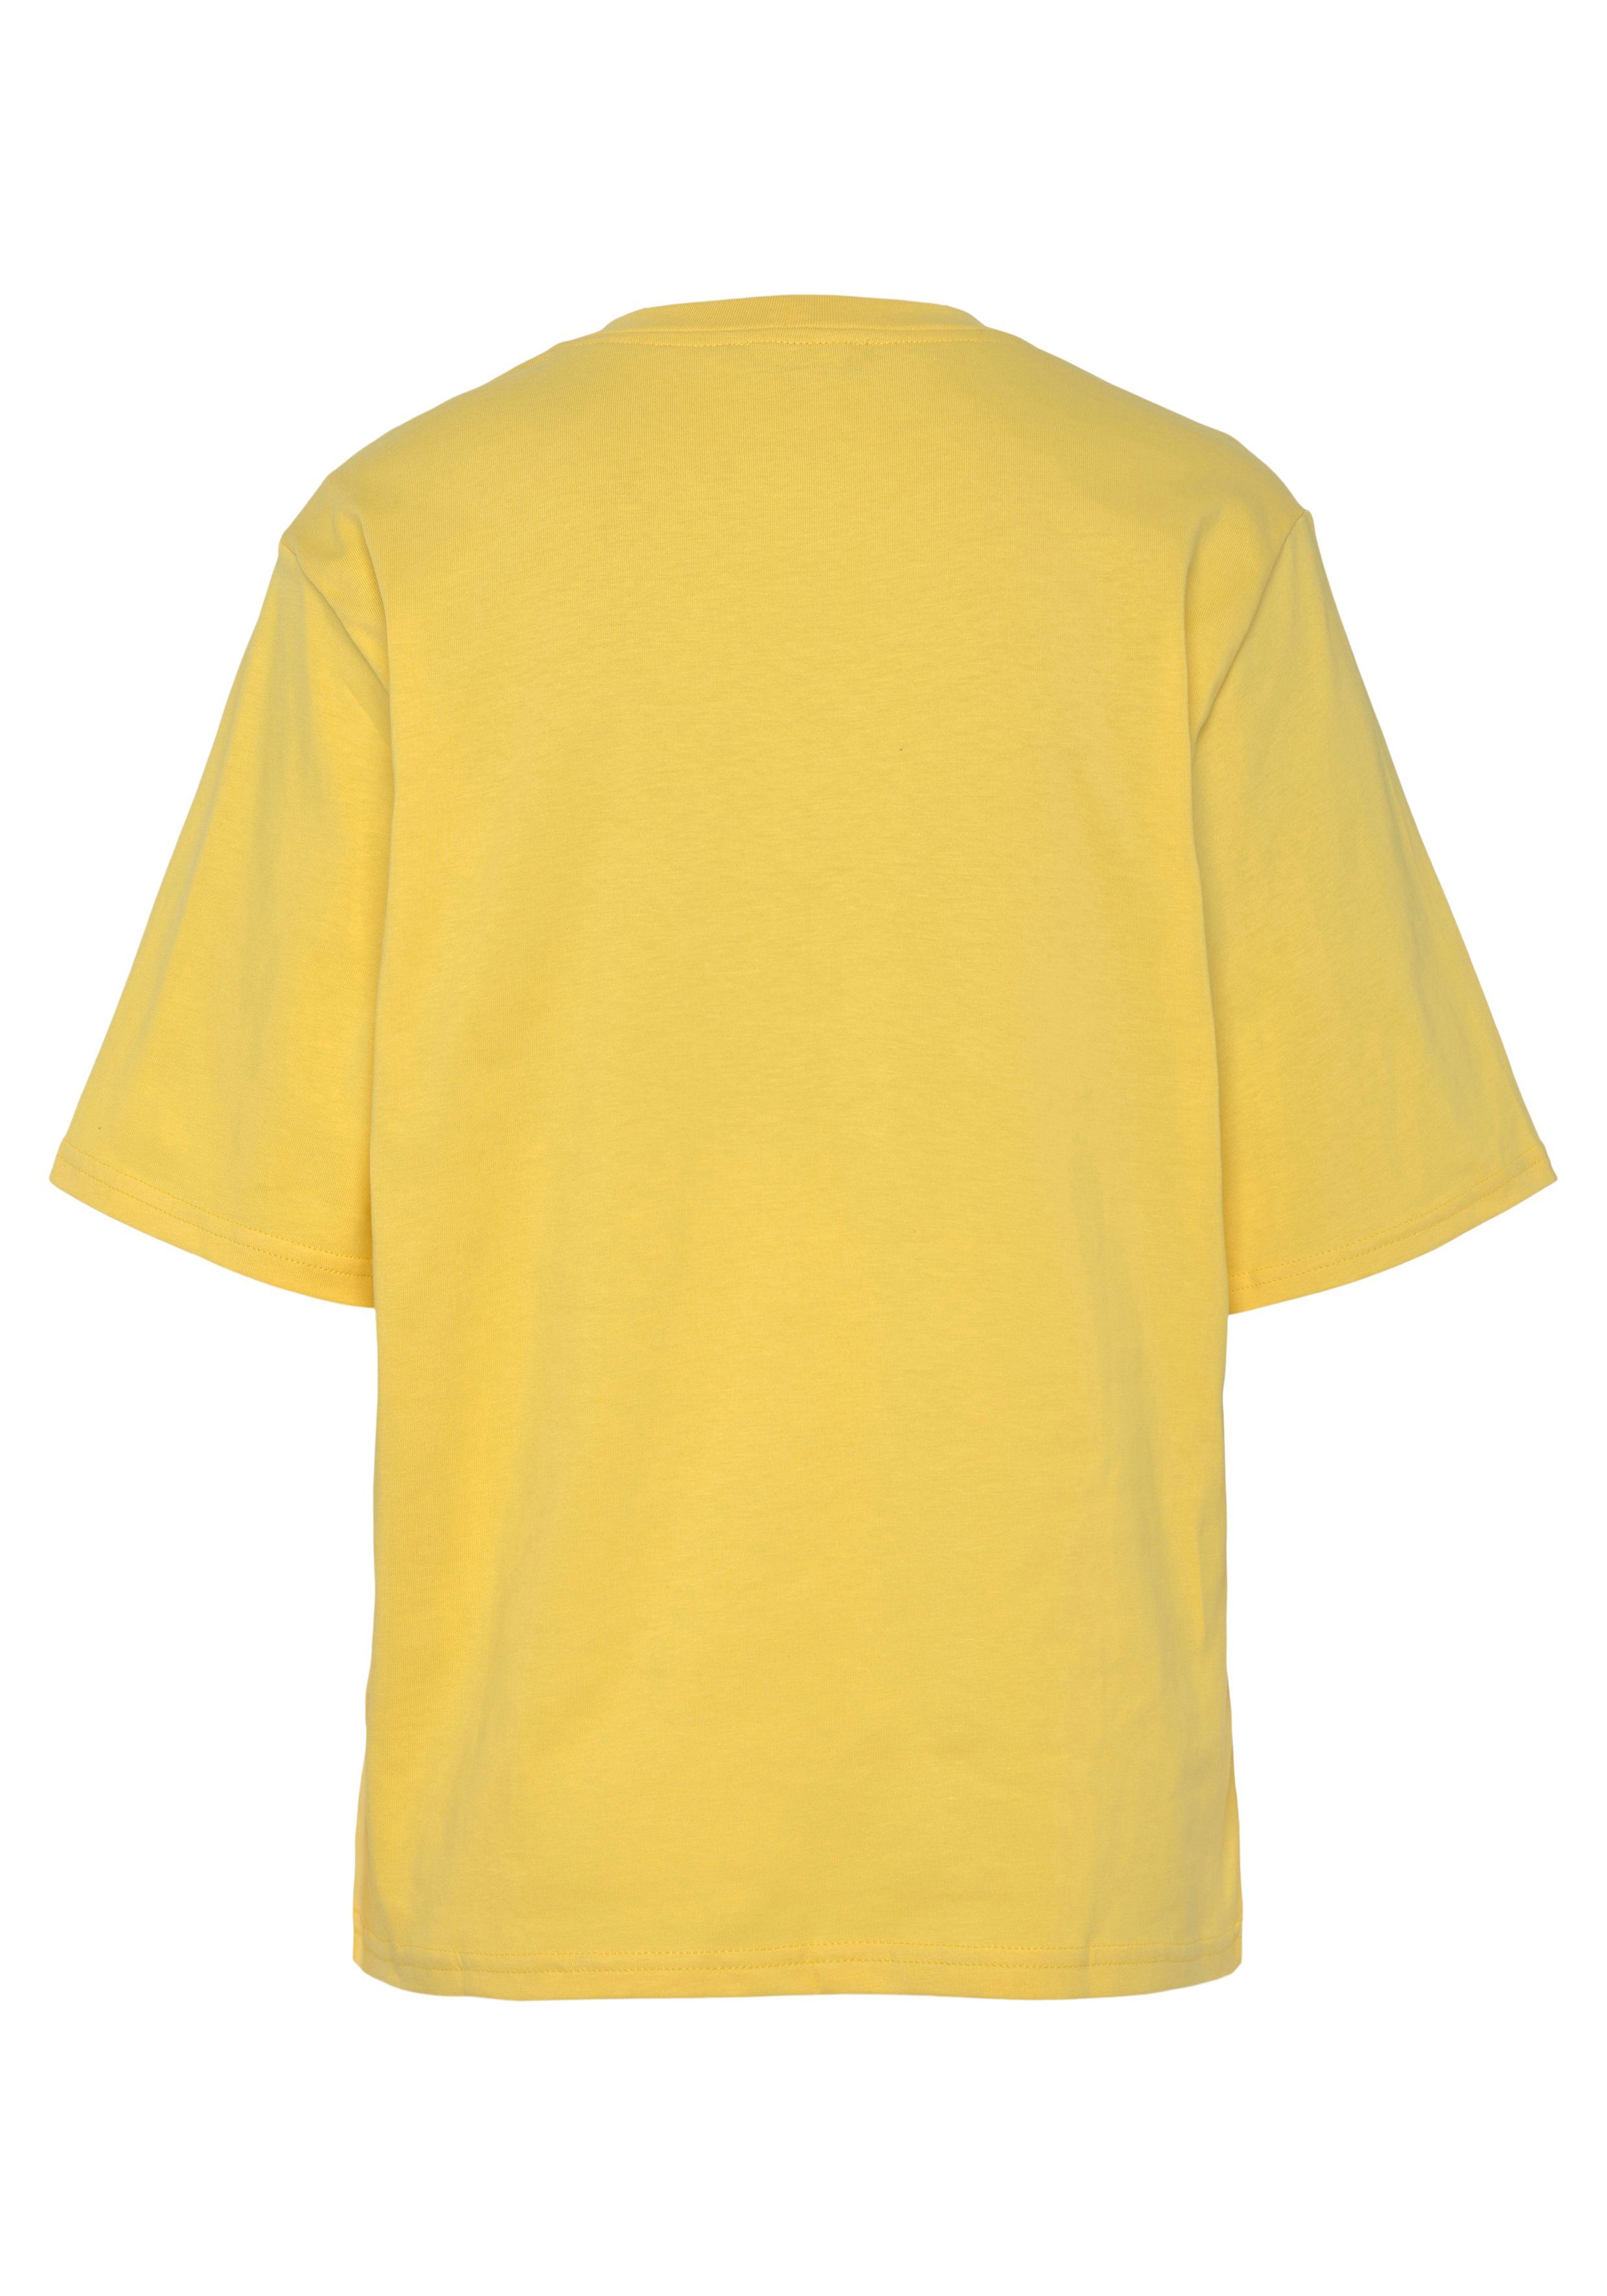 United Colors of Benetton Logodruck mit auf T-Shirt gelb der Brust